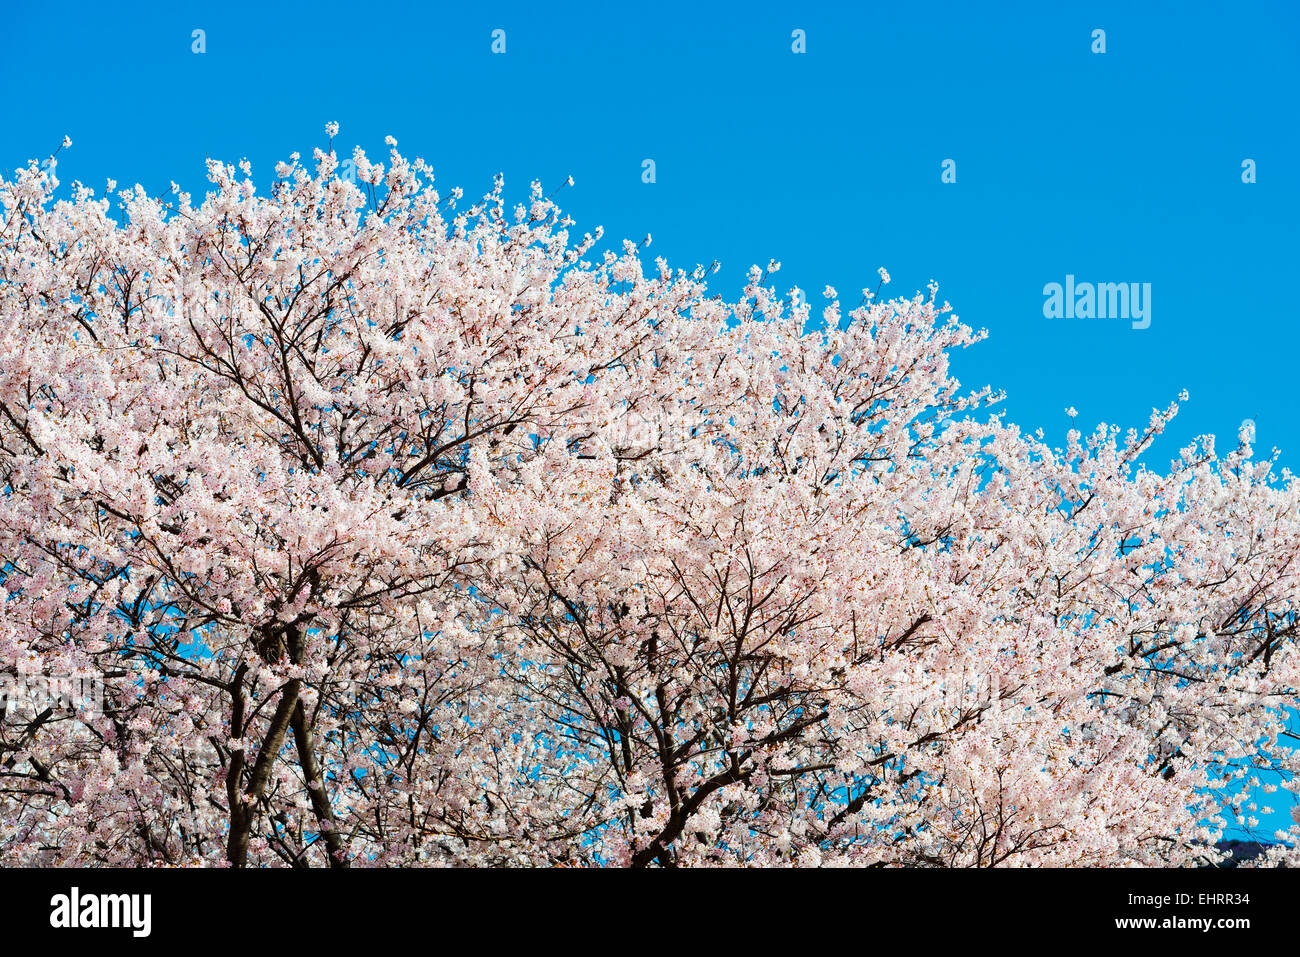 Asia, Republic of Korea, South Korea, Jinhei, spring cherry blossom festival Stock Photo